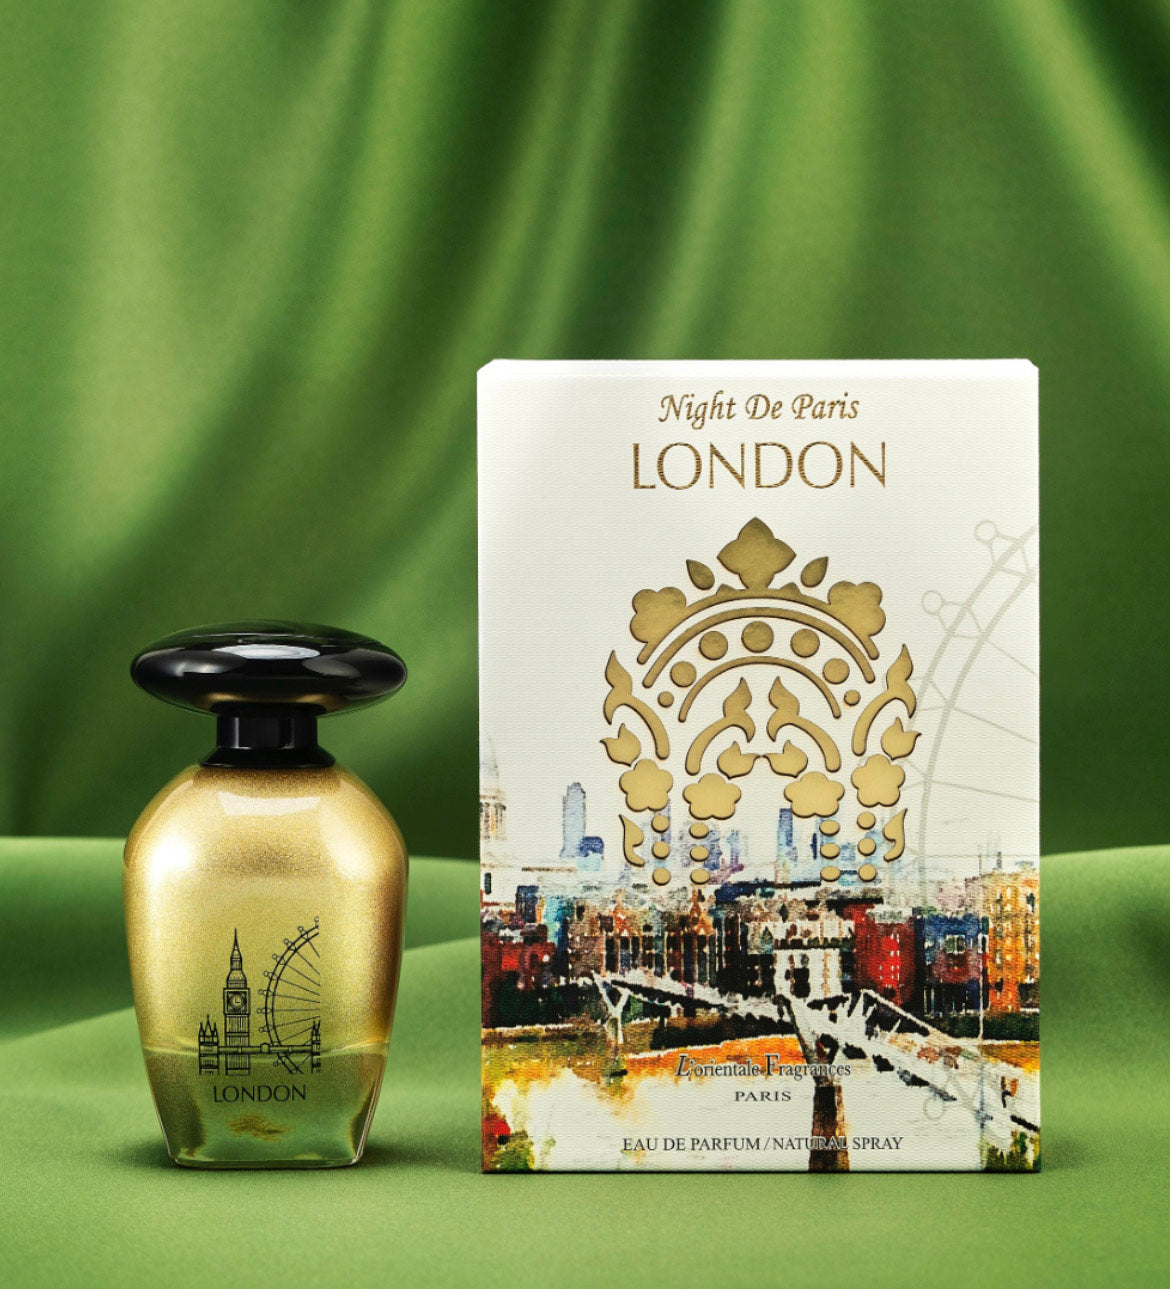 L'ORIENTALE FRAGRANCES Night De Paris London 100ml / 3.3oz - Oil-Based  Perfumes for Women & Men, Unisex Amber Spicy Eau de Parfum - Long-Lasting  Up to